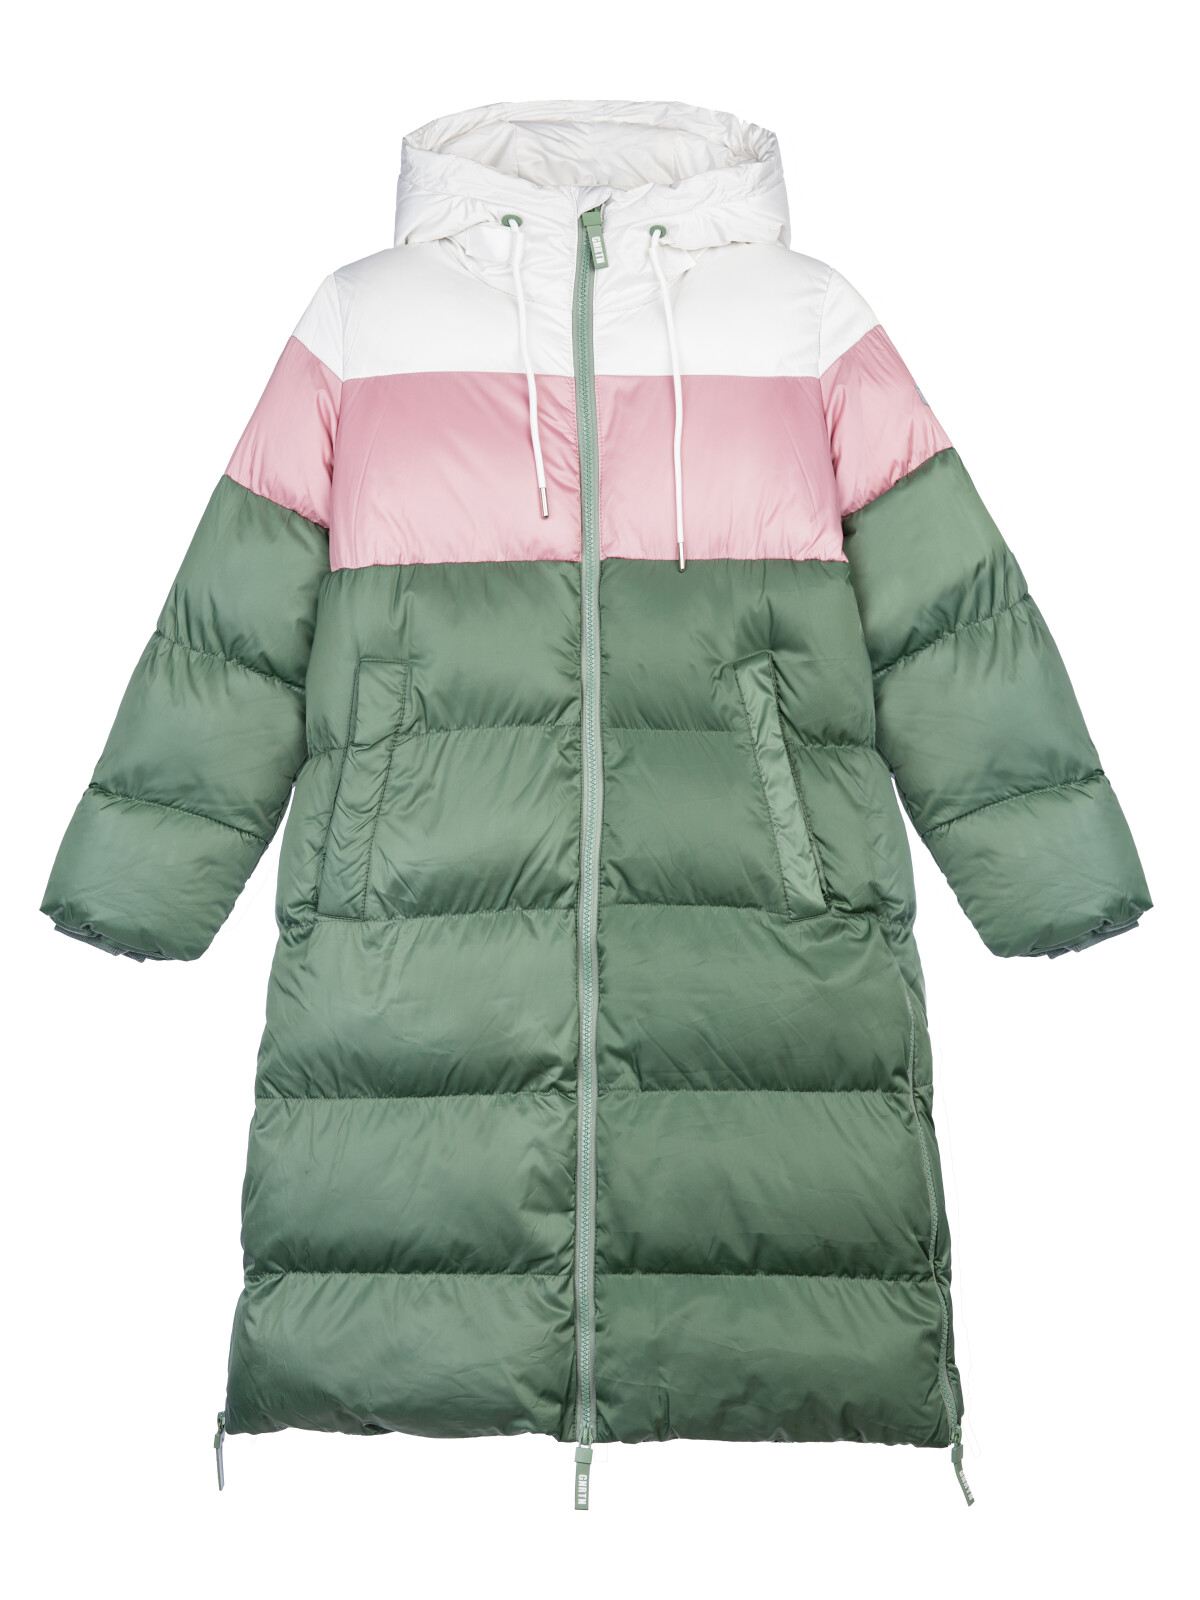 Пальто текстильное для девочек PlayToday, серебро,коричневый,темно-зеленый, 146 косметичка на молнии зеленый коричневый